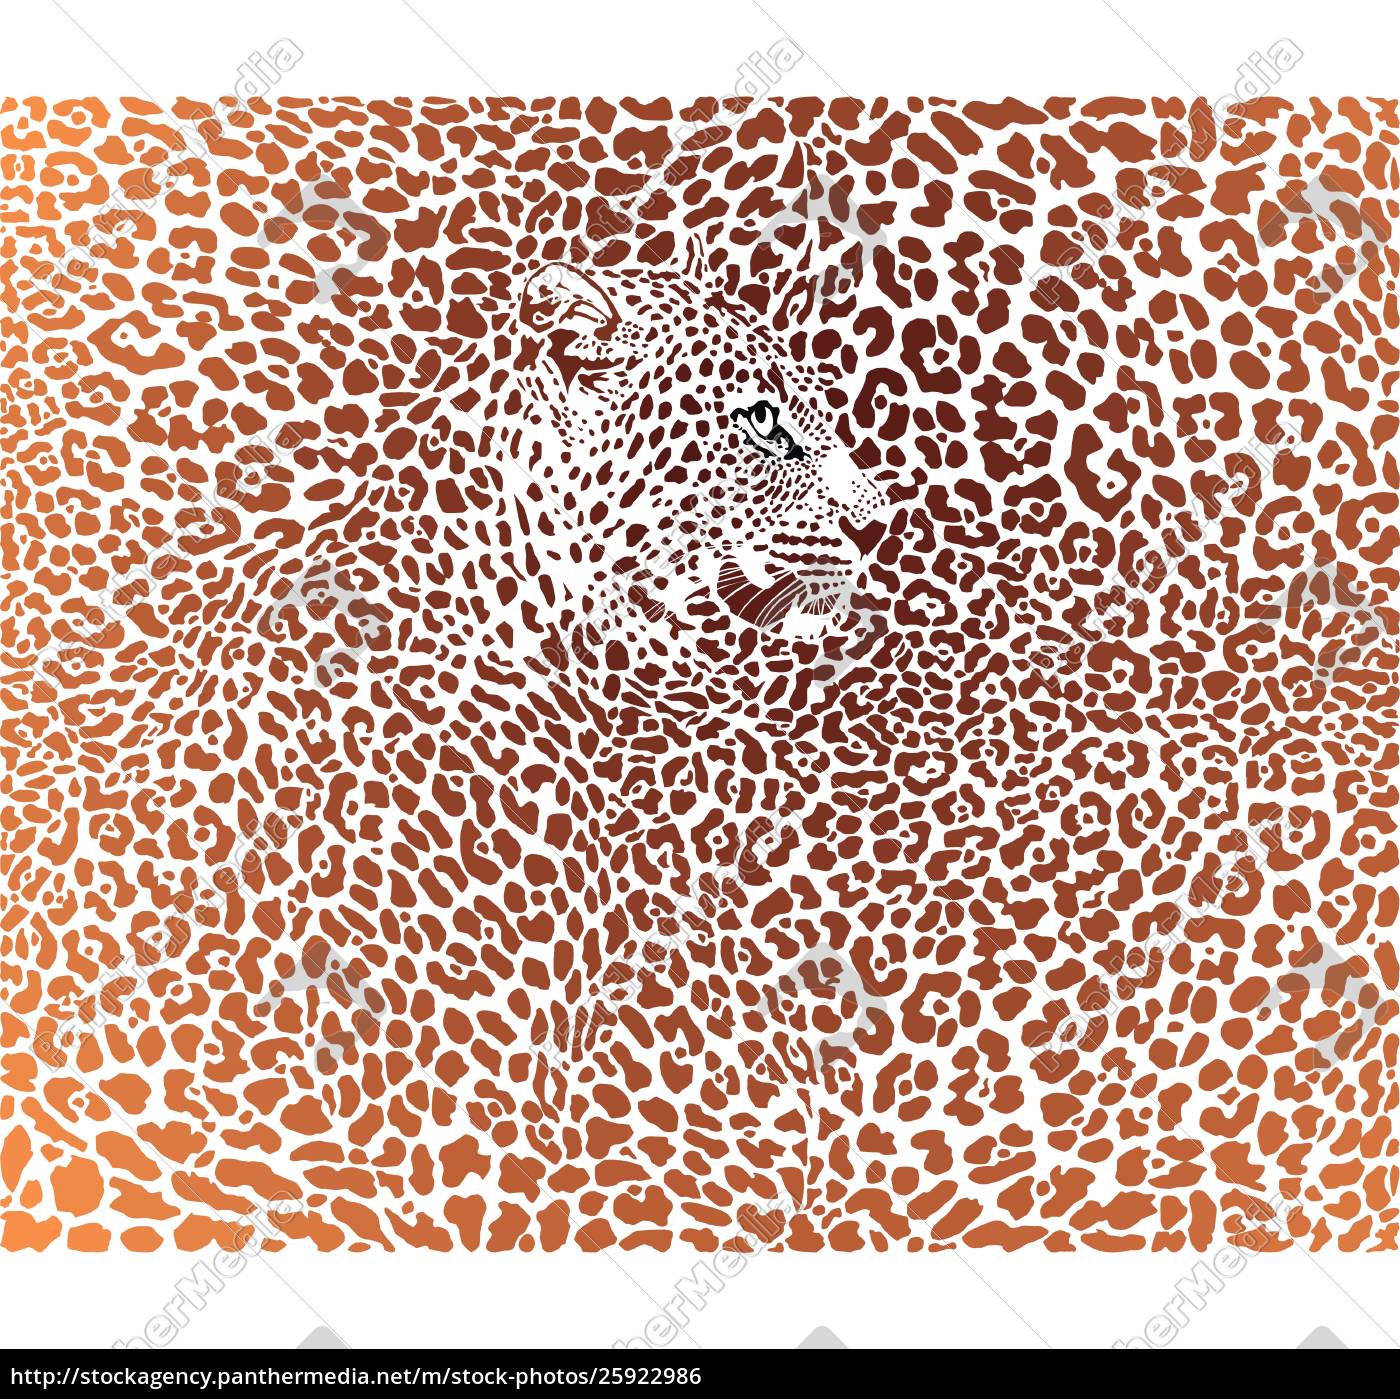 leopardenmuster hintergrund - Lizenzfreies Bild #25922986